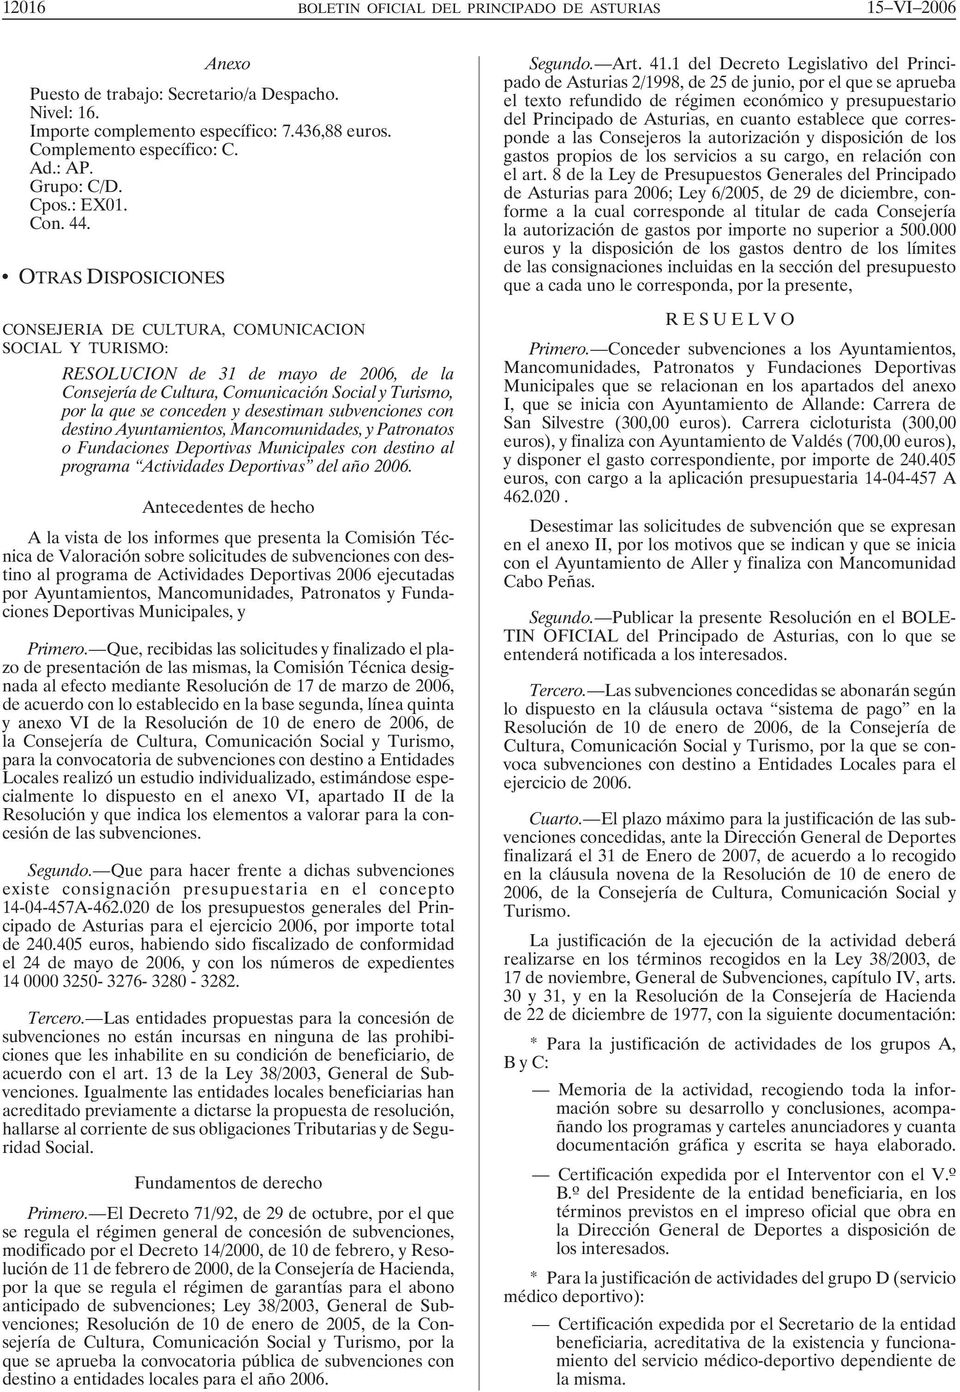 OTRAS DISPOSICIONES CONSEJERIA DE CULTURA, COMUNICACION SOCIAL Y TURISMO: RESOLUCION de 31 de mayo de 2006, de la Consejería de Cultura, Comunicación Social y Turismo, por la que se conceden y